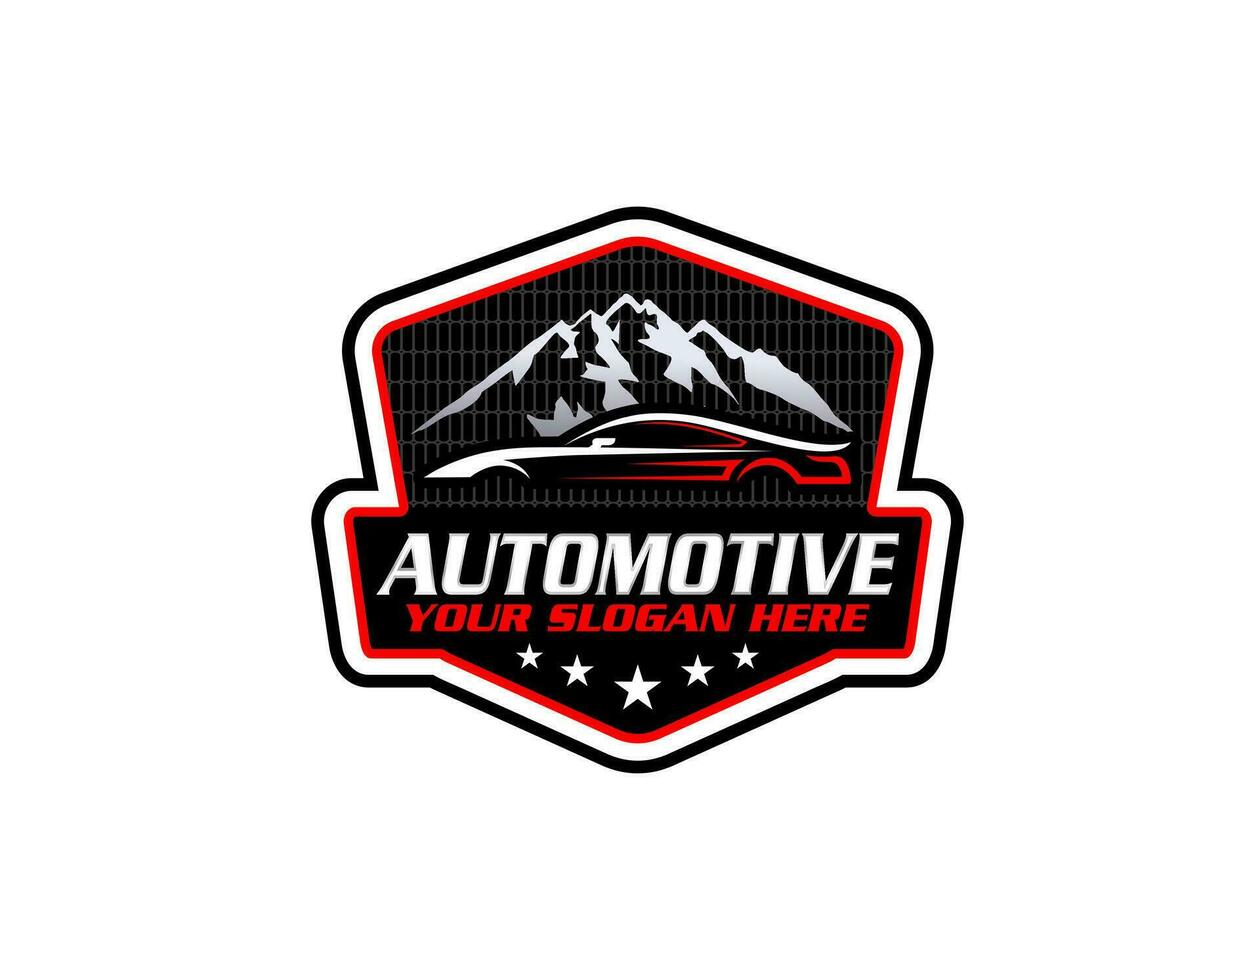 plantilla de logotipo de camión deportivo, logotipo perfecto para negocios relacionados con la industria automotriz vector